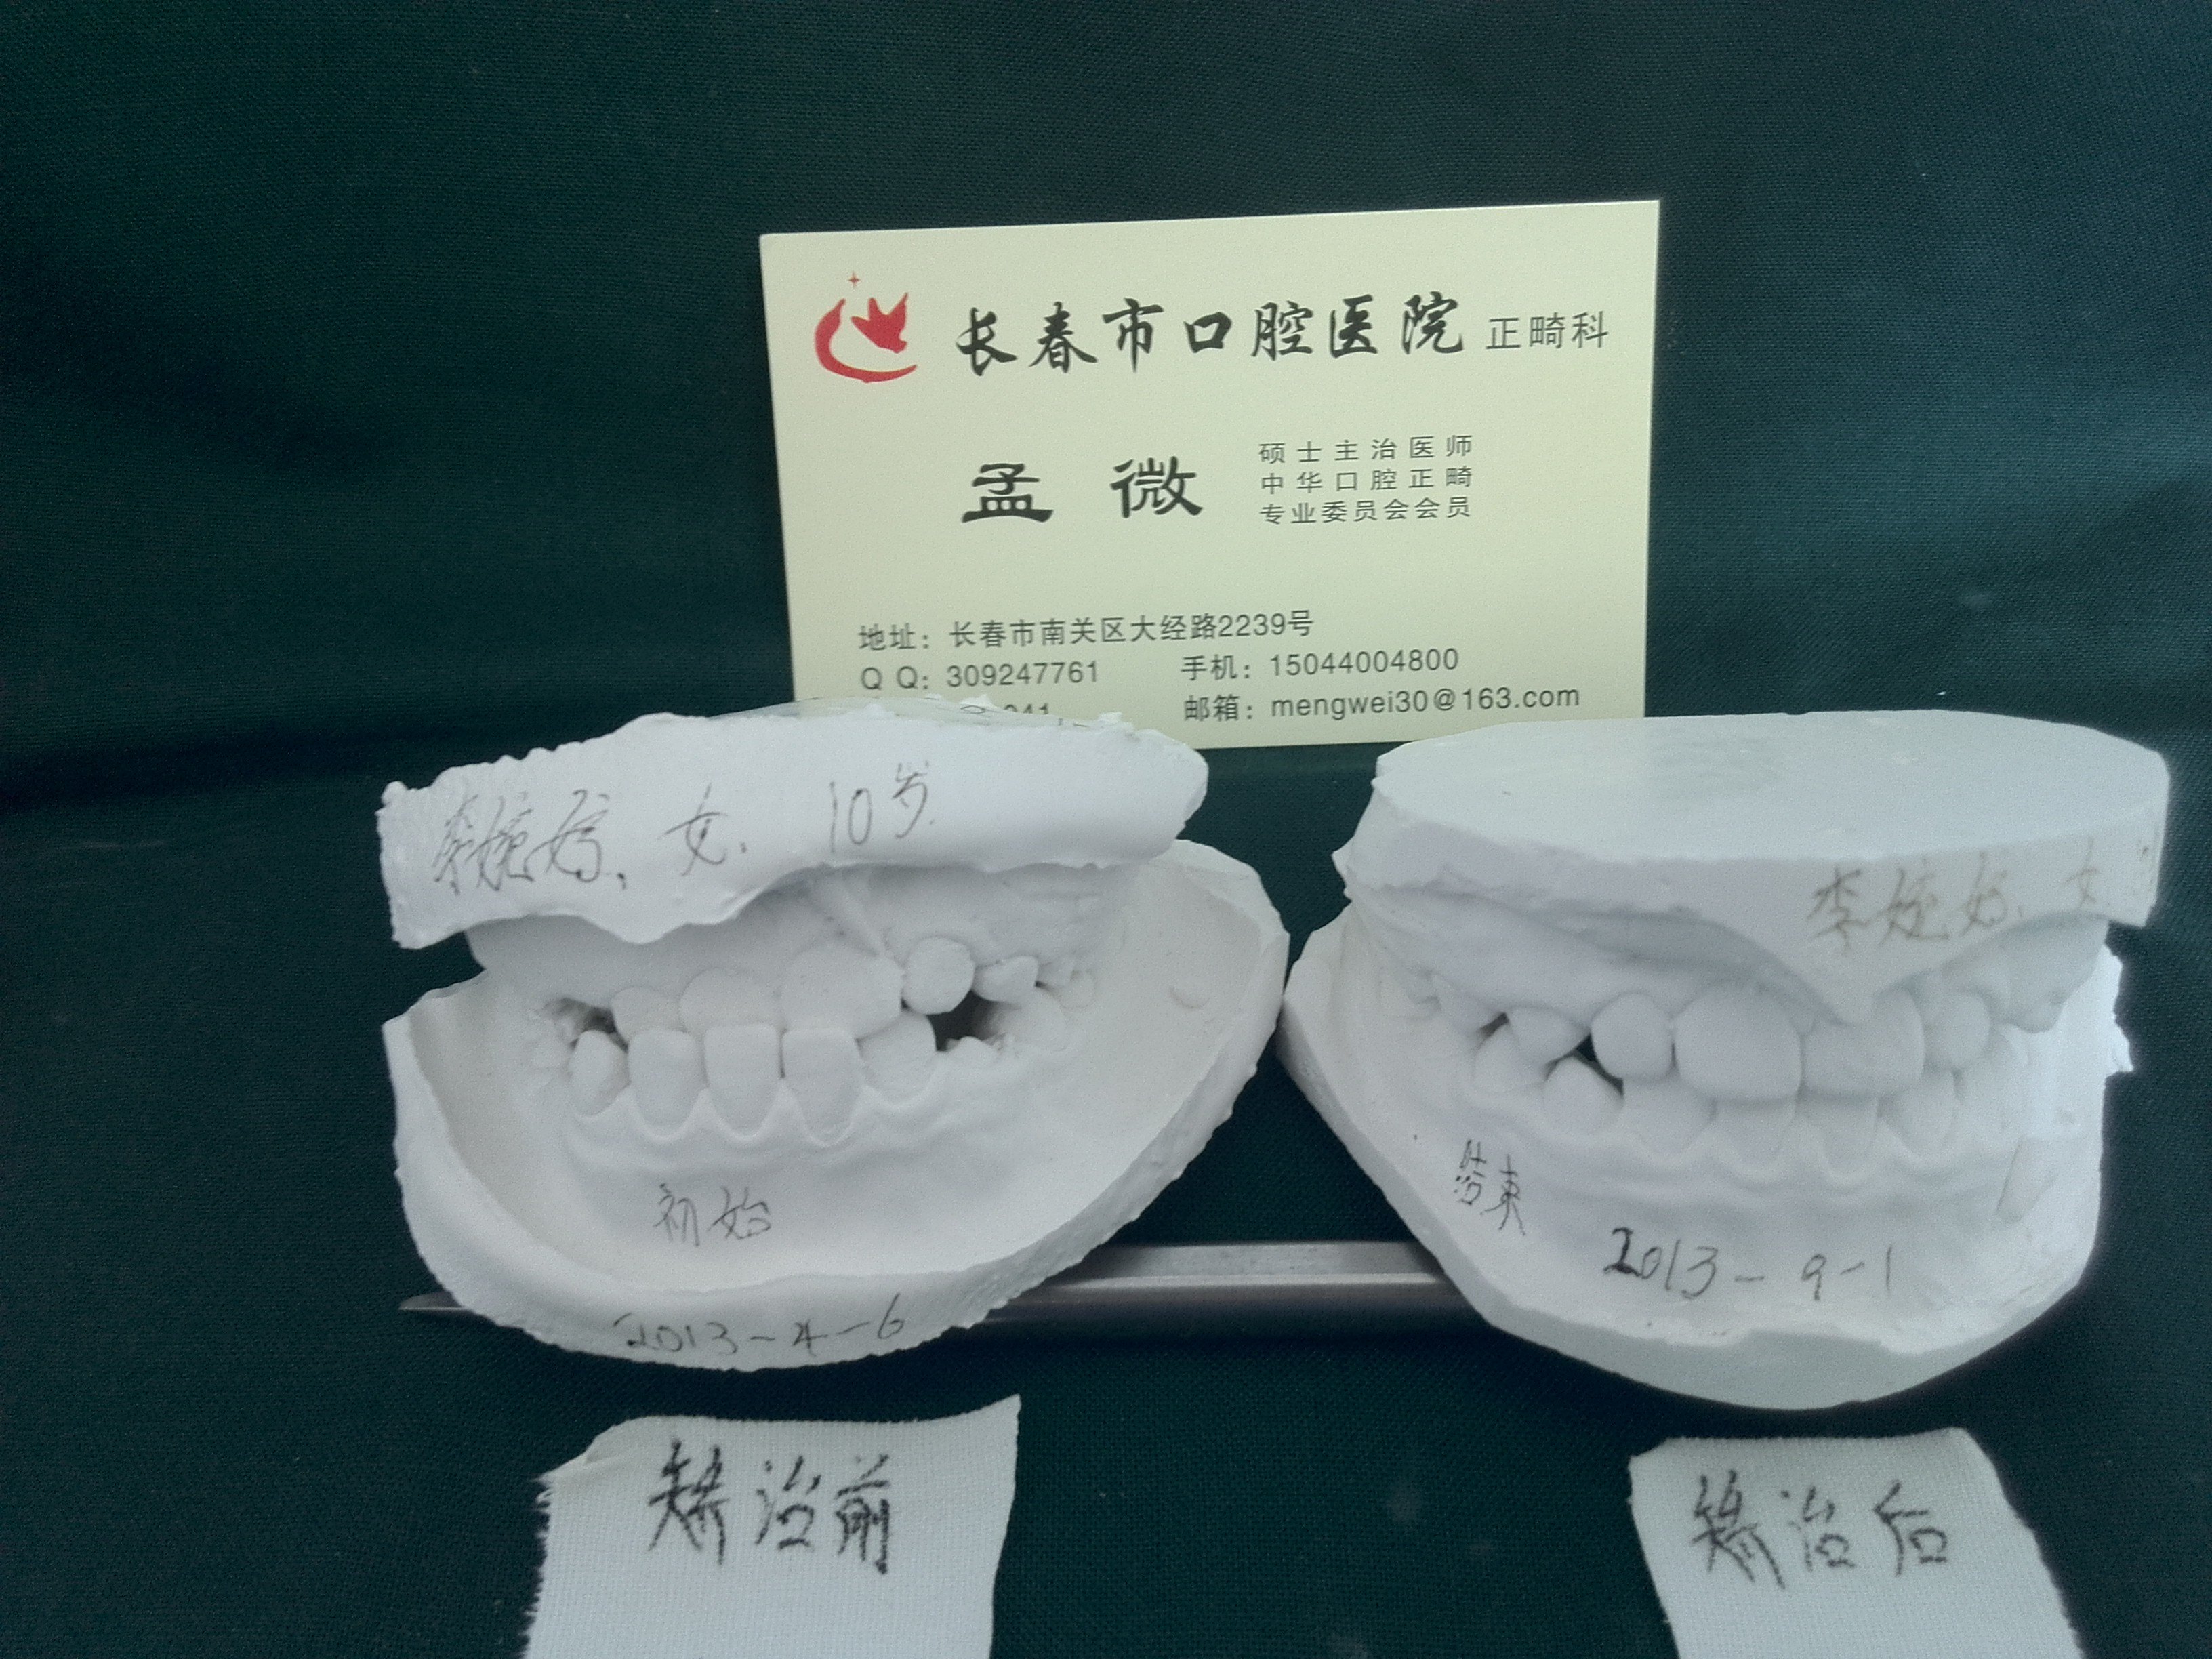 注意保护好儿童的“六龄齿”—窝沟封闭-健康教育-清华大学附属北京清华长庚医院口腔科